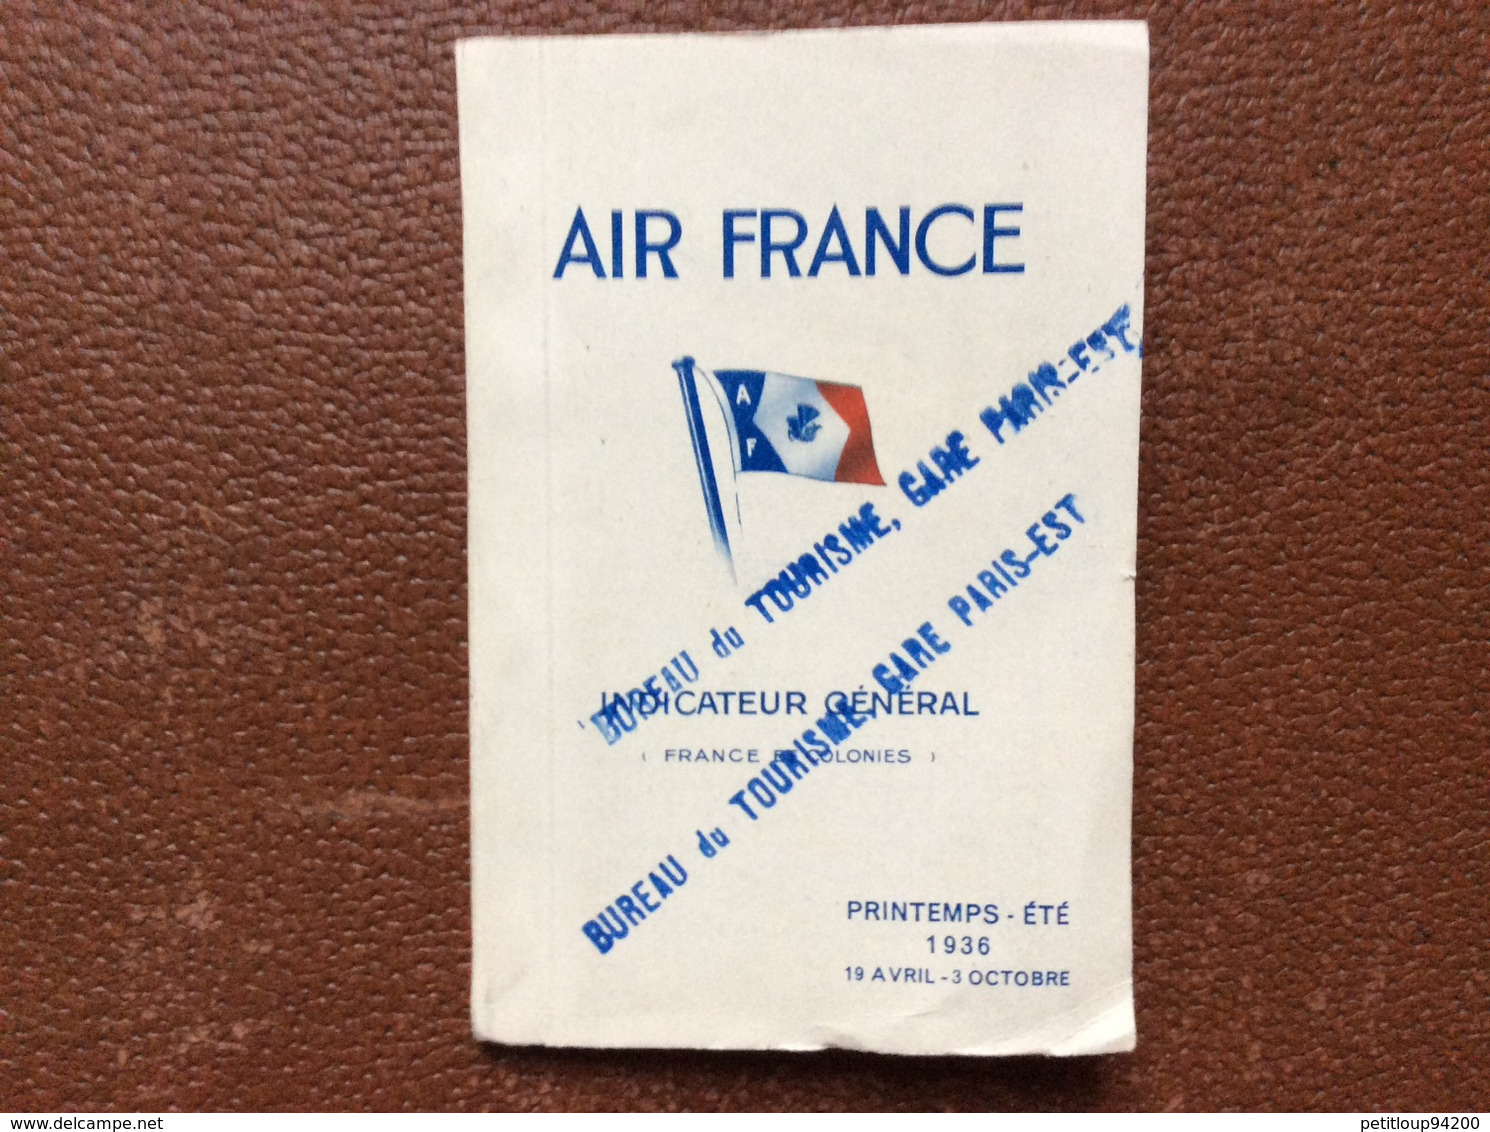 INDICATEUR GENERAL AIR FRANCE  France Et Colonies  PRINTEMPS-ETE 1936  19 Avril-3 Octobre - Timetables